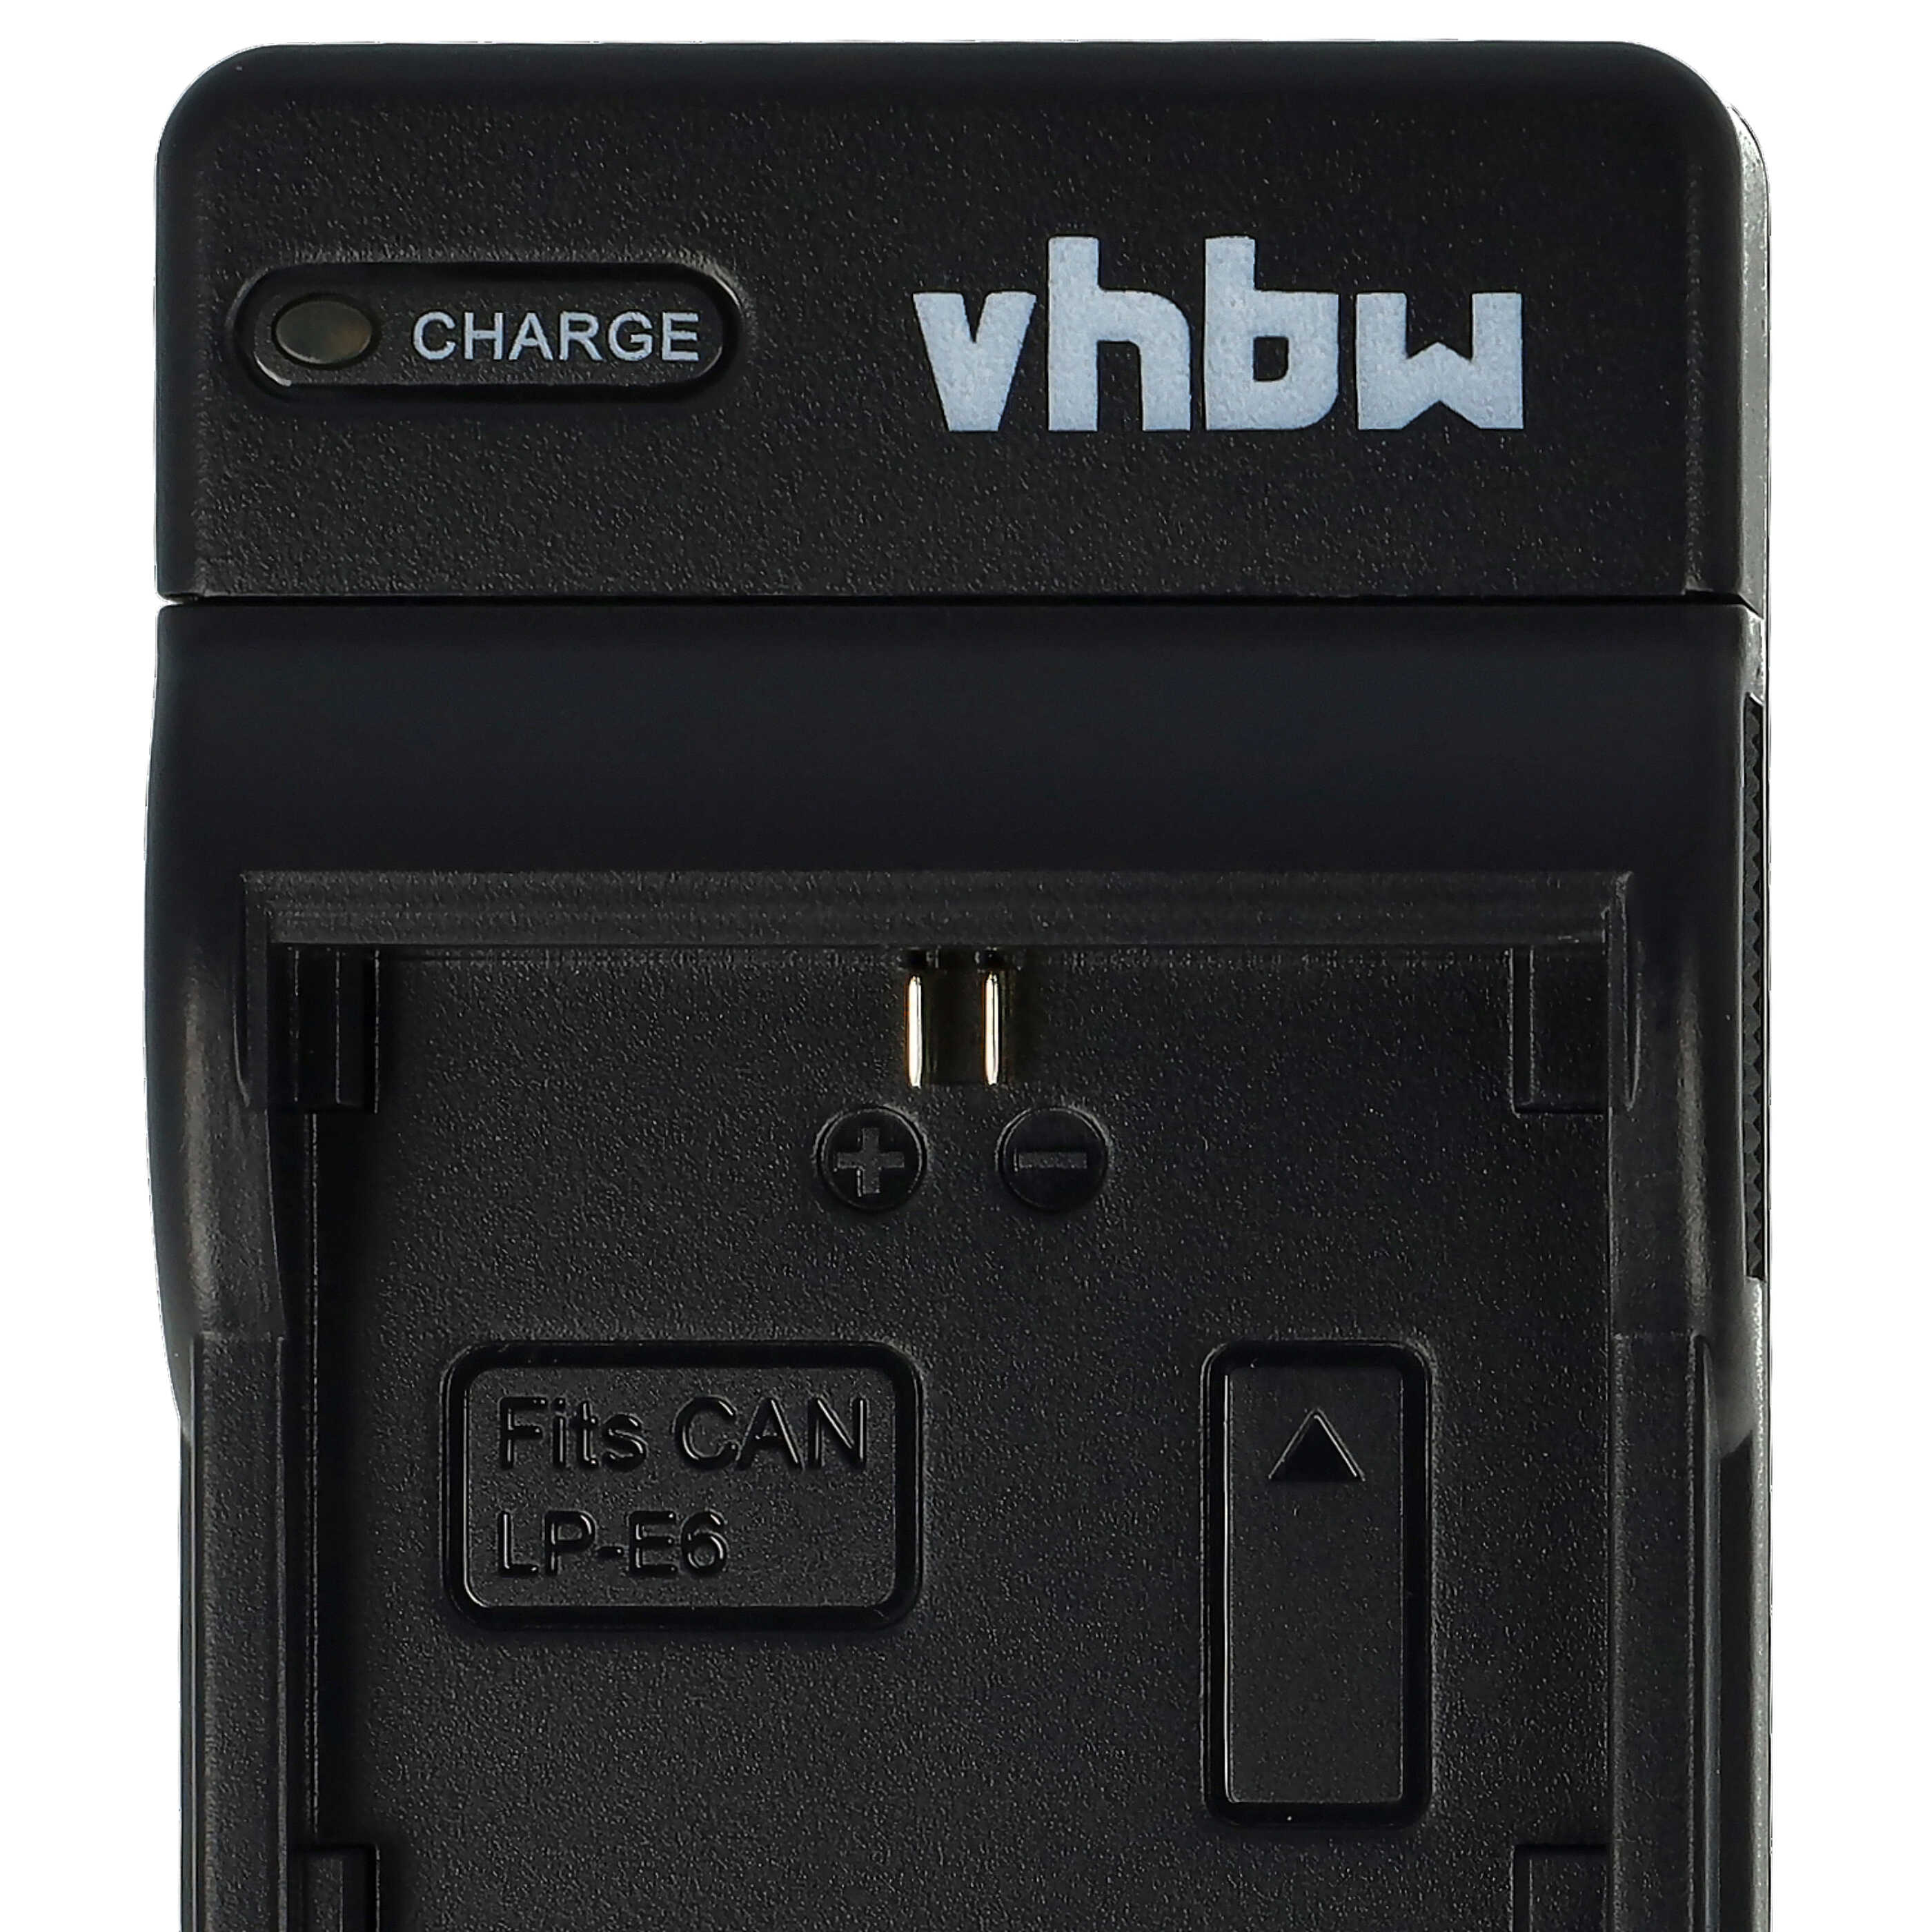 Battery Charger suitable for Pocket Cinema 4K Camera etc. - 0.5 A, 8.4 V